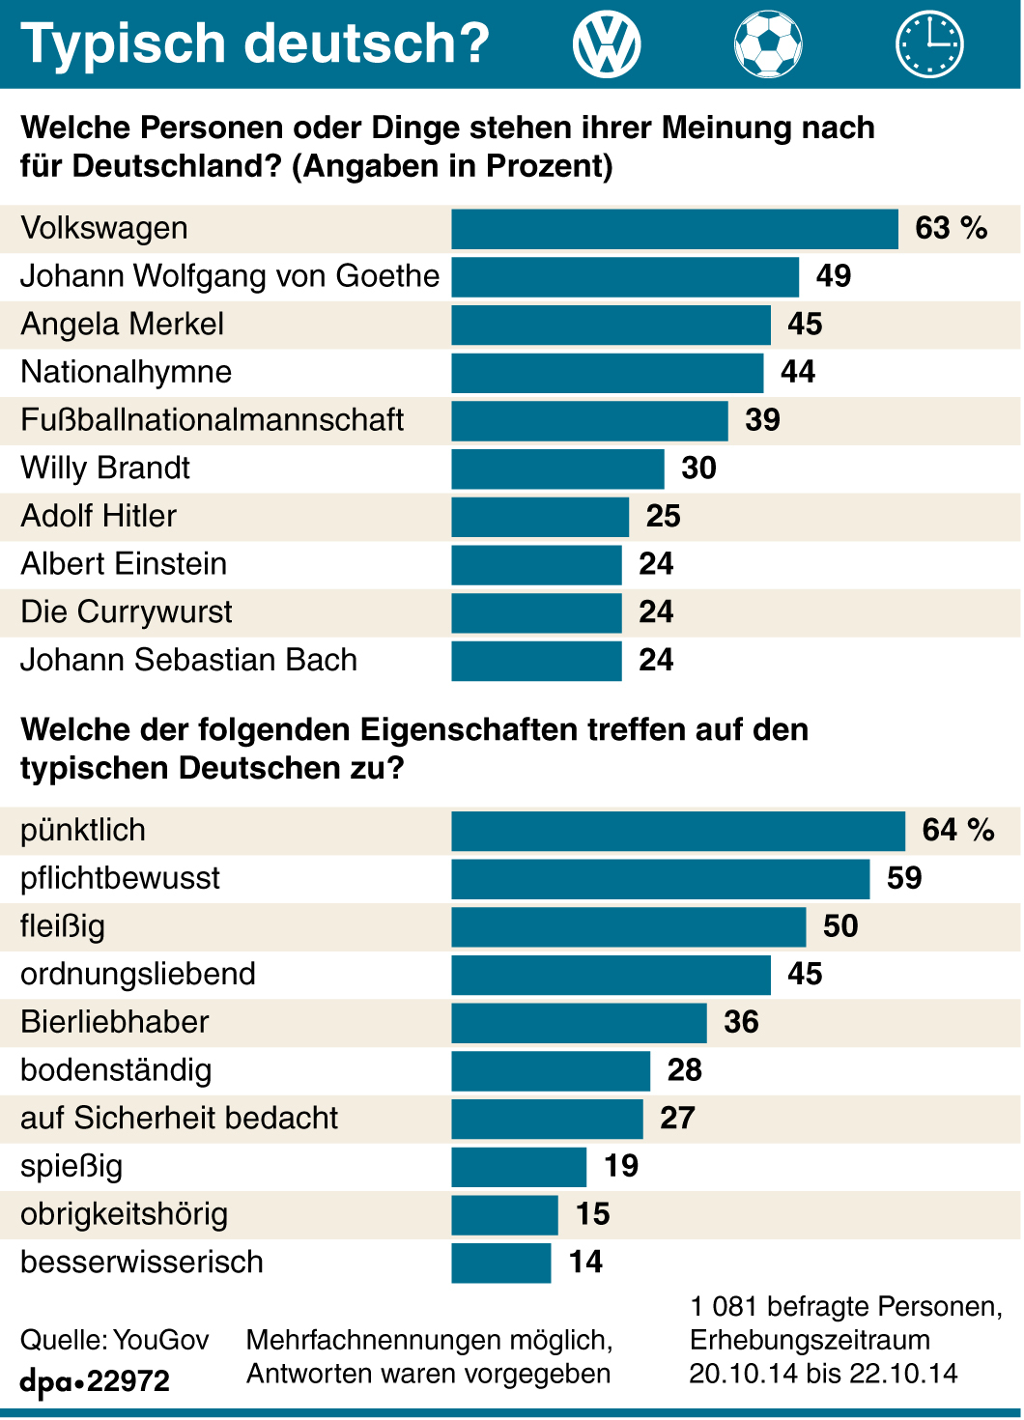 Grafikk om tyskernes vurdering av hva som er typisk tysk: personer, merkevarer og egenskaper.